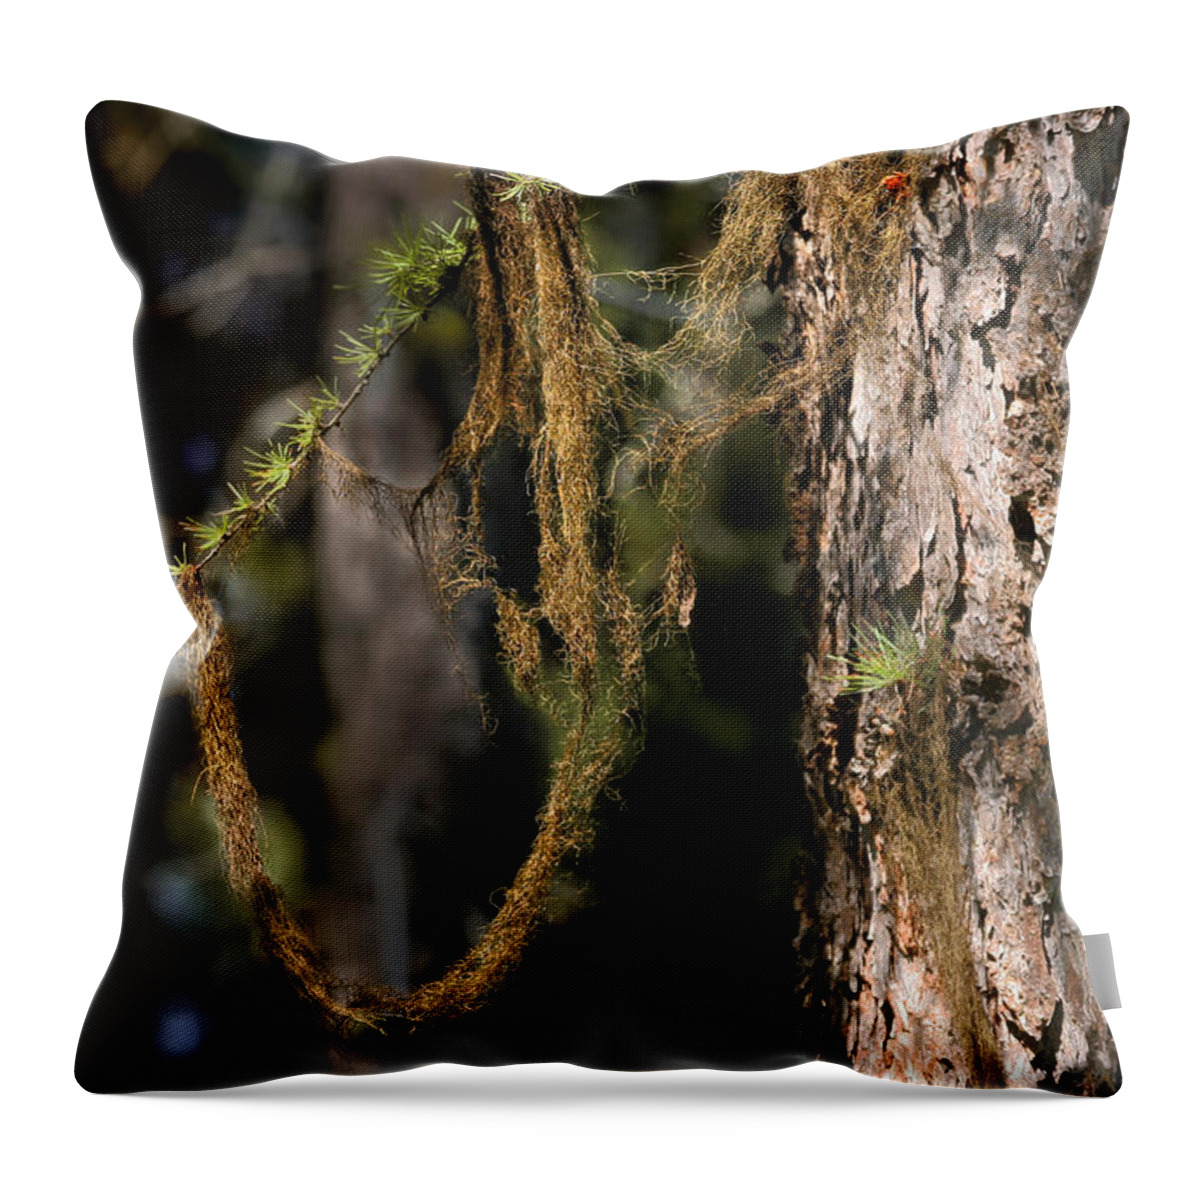 Moss Throw Pillow featuring the photograph Tree moss - Green soft beauty by Alexandra Till